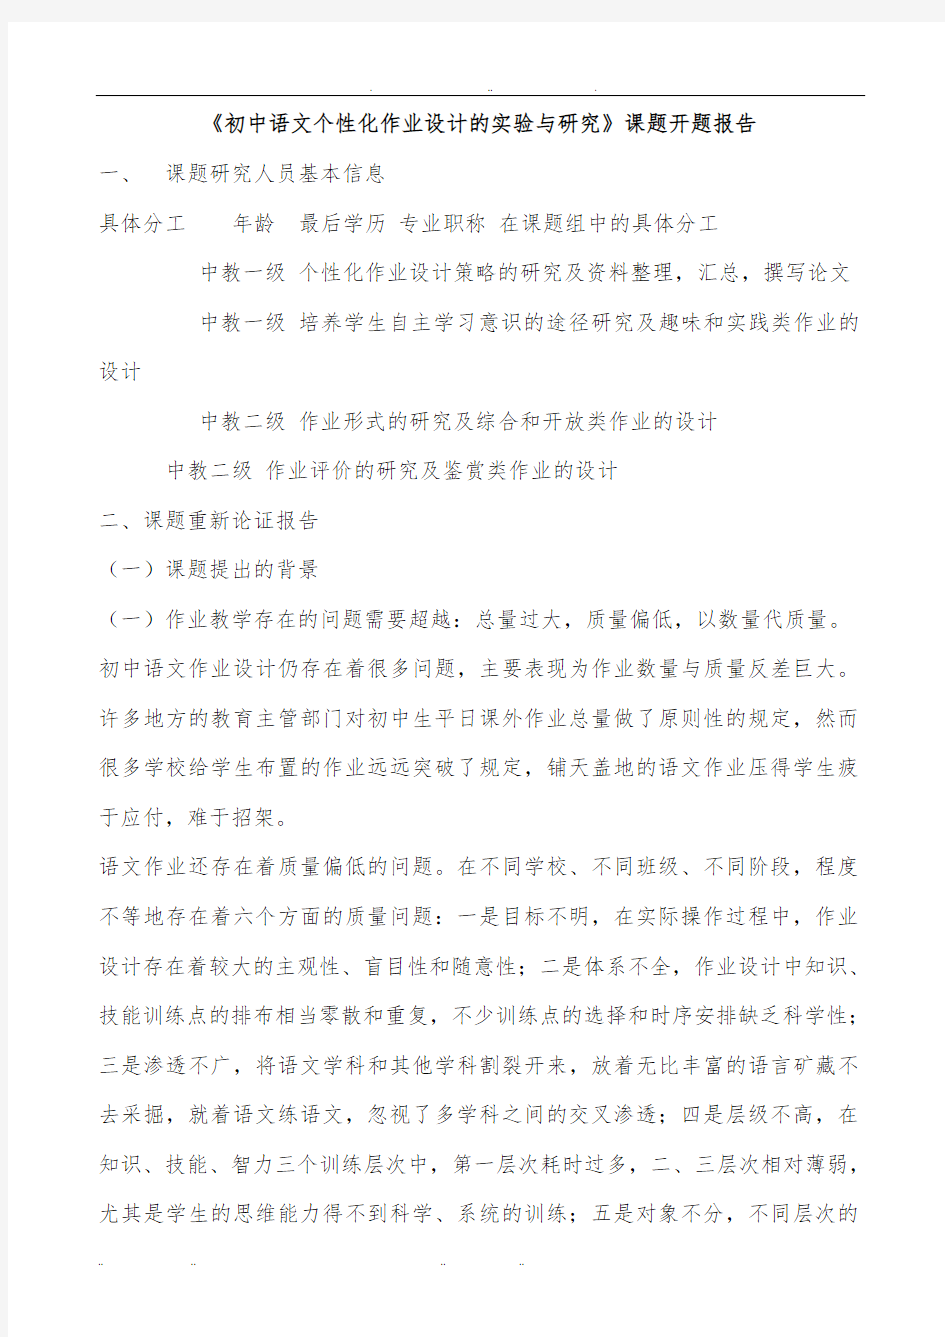 初中语文个性化作业设计的实验与研究课题开题报告